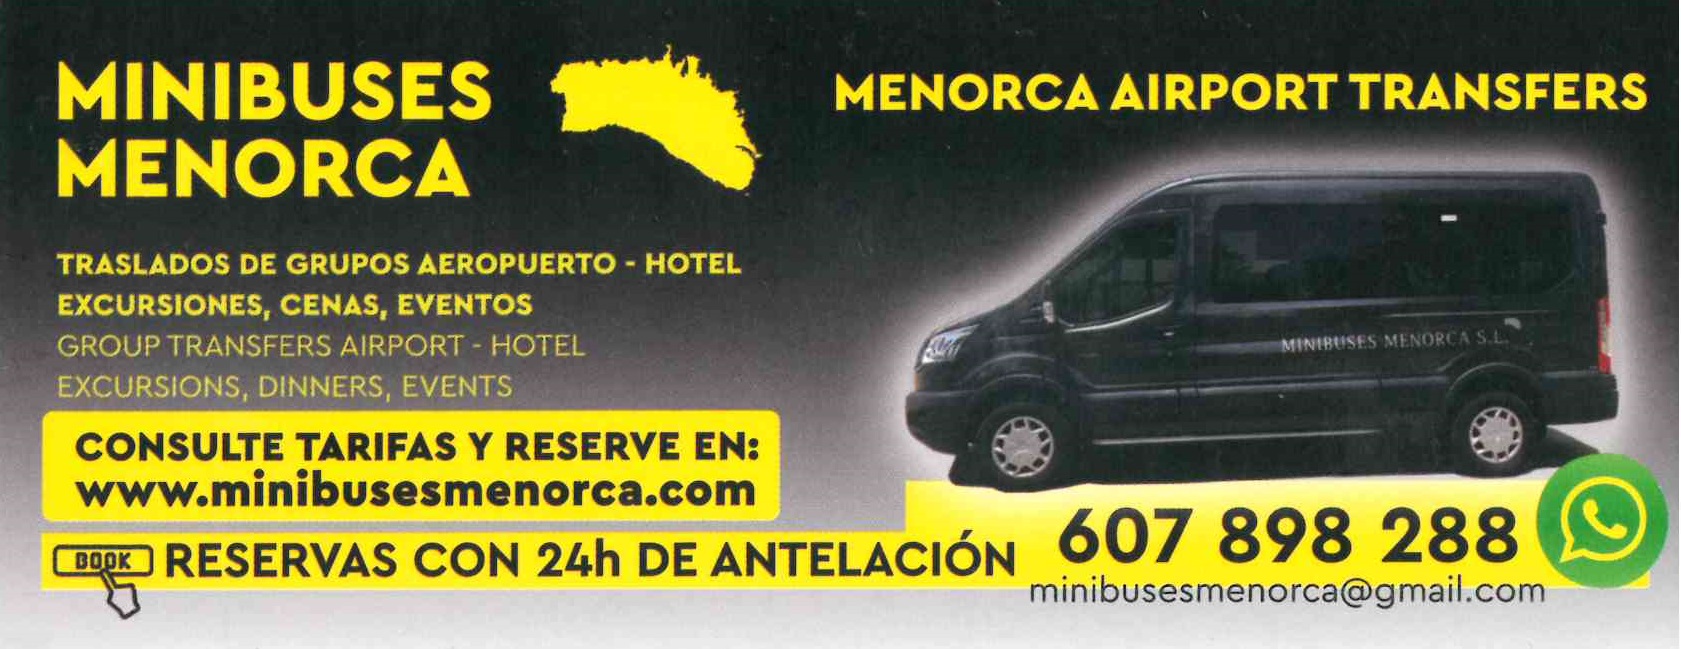 Images Minibuses Menorca